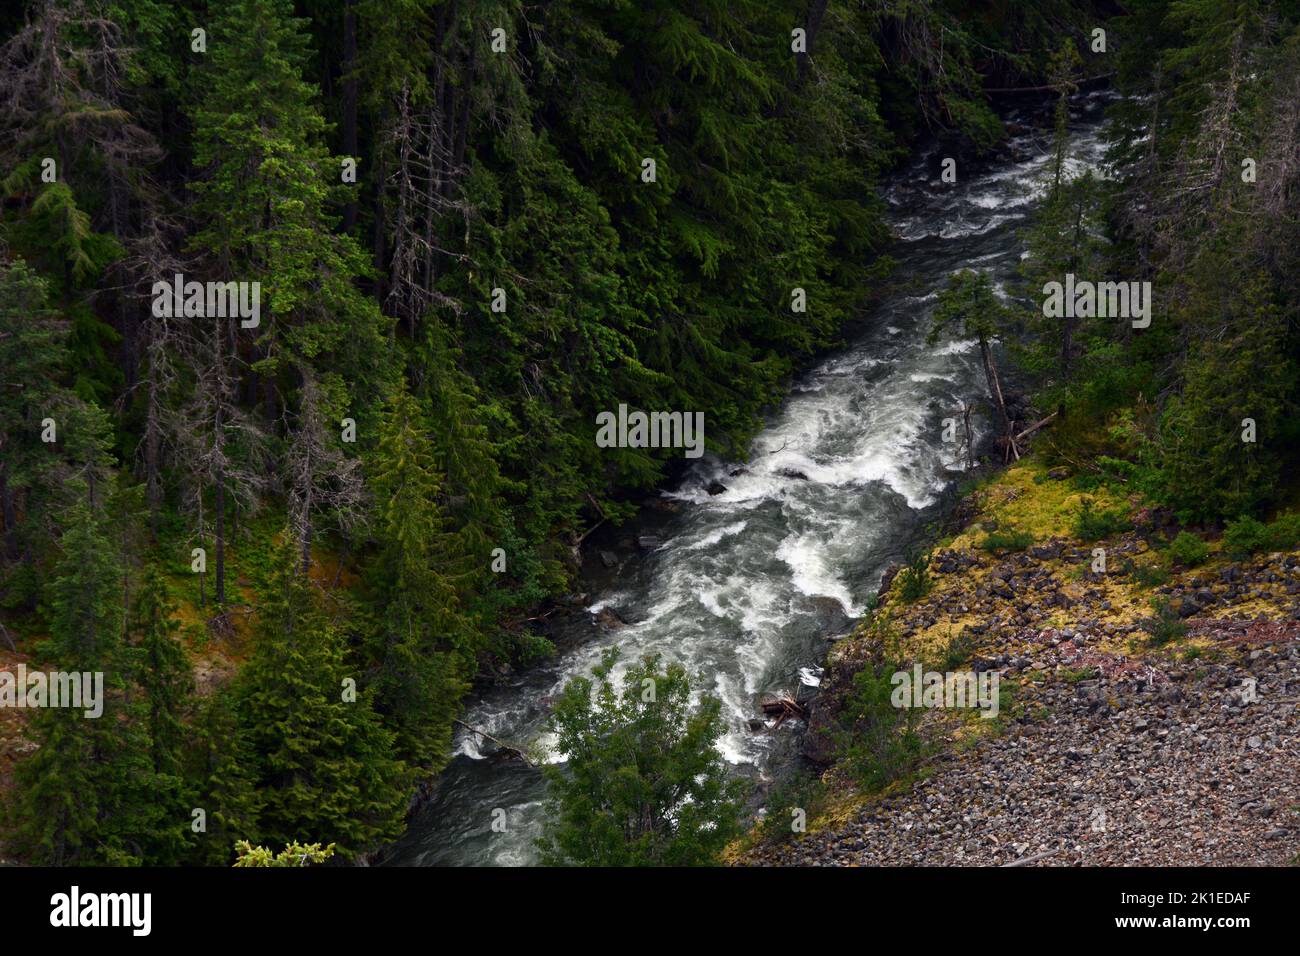 El río Skagit fluye a través del parque provincial Skagit Valley en la cordillera North Cascades, British Columbia, Canadá. Foto de stock